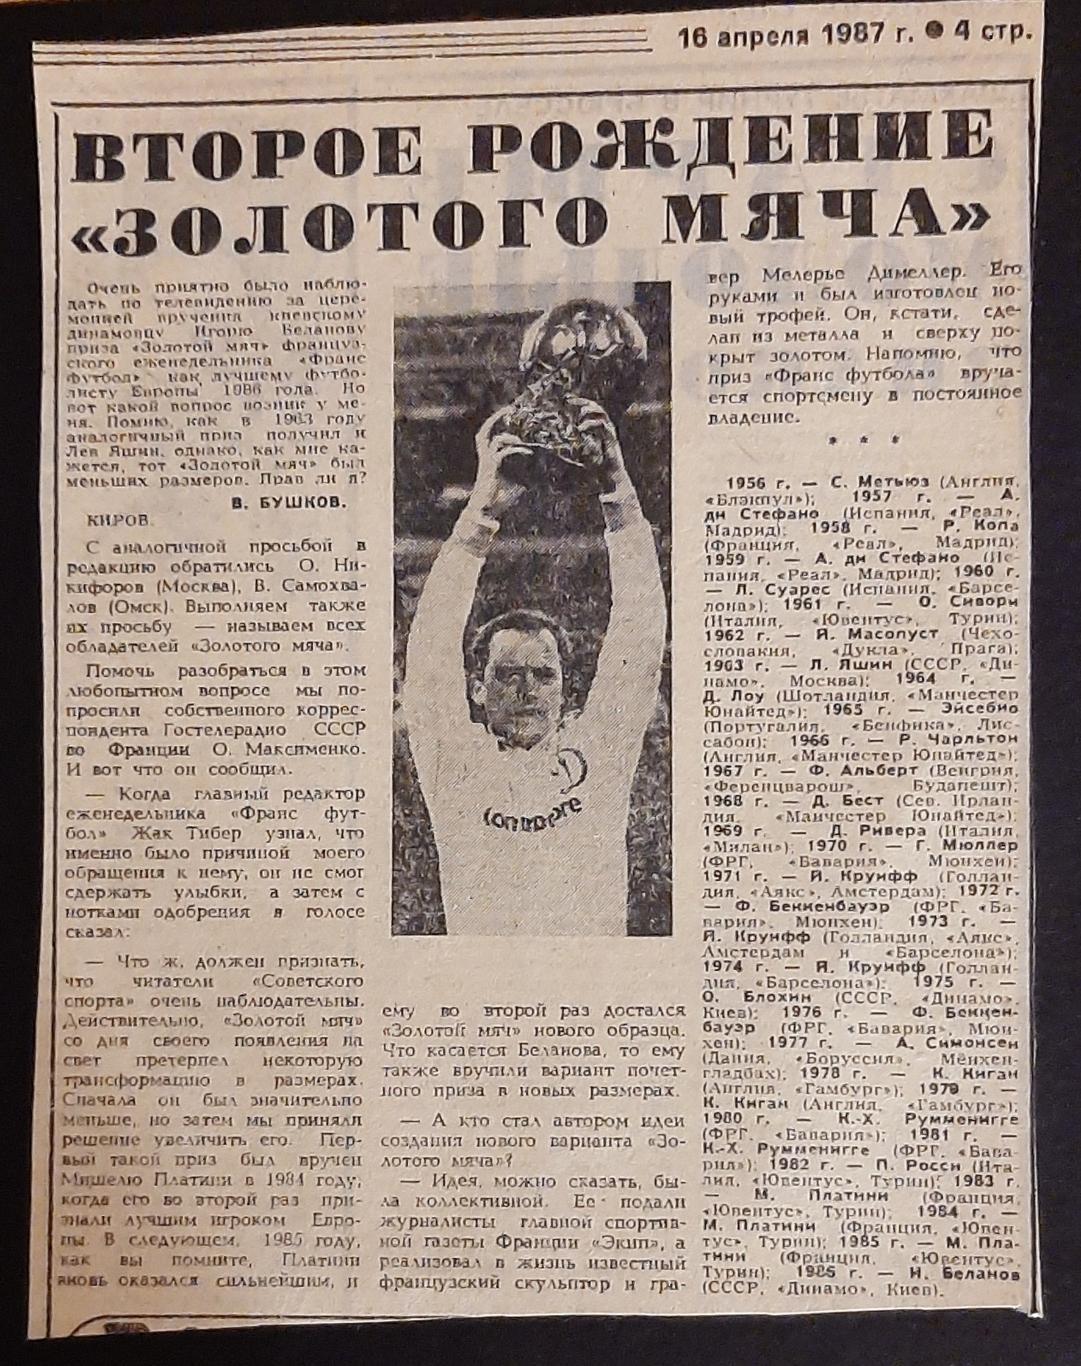 Вирізка з газети Советский спорт (16.04.1987) Друге народження Золотого мяча